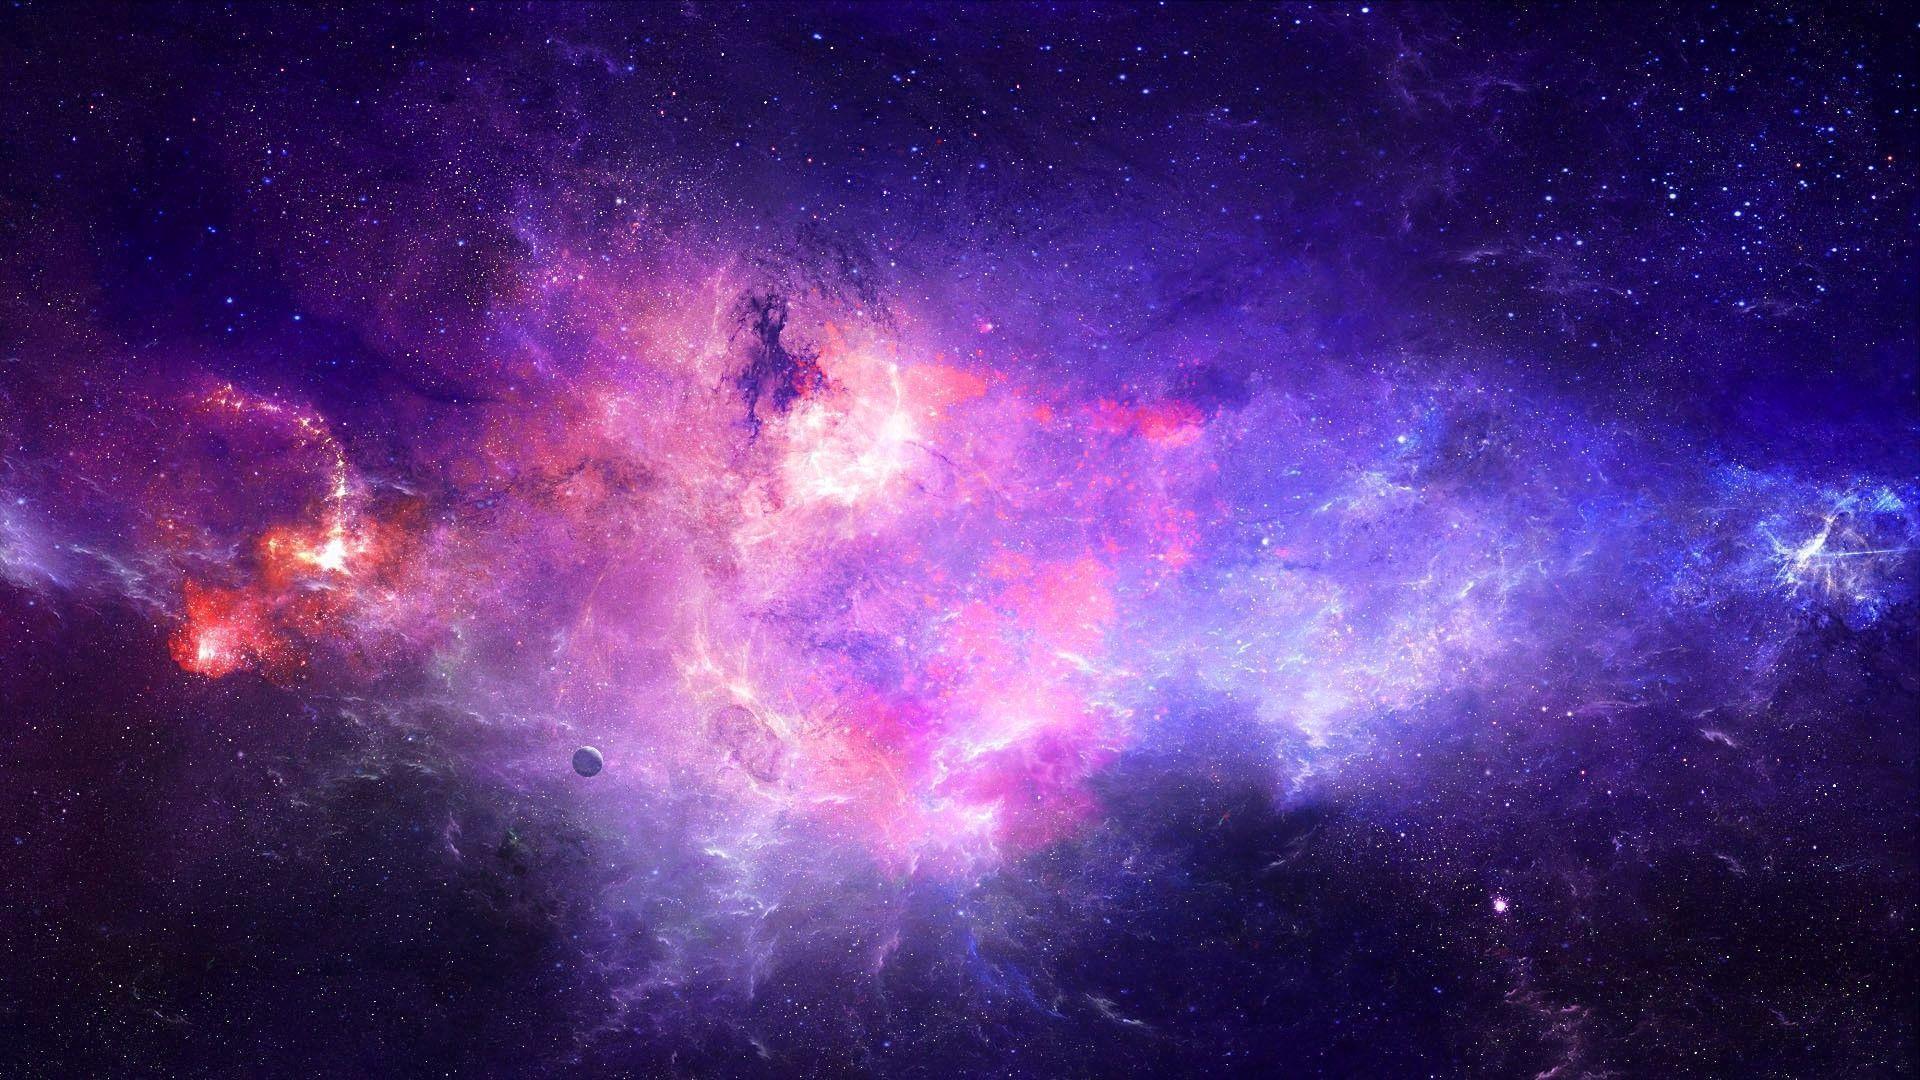 Tumblr Galaxy Desktop Wallpapers mang đến cho bạn những hình ảnh đầy màu sắc, tuyệt đẹp về vũ trụ. Từ những hình ảnh độc đáo, sáng tạo cho đến những hình ảnh trong văn hóa đại chúng, tất cả đều có ở đây. Hãy truy cập vào đó để tìm kiếm những hình nền vũ trụ cho máy tính của bạn.